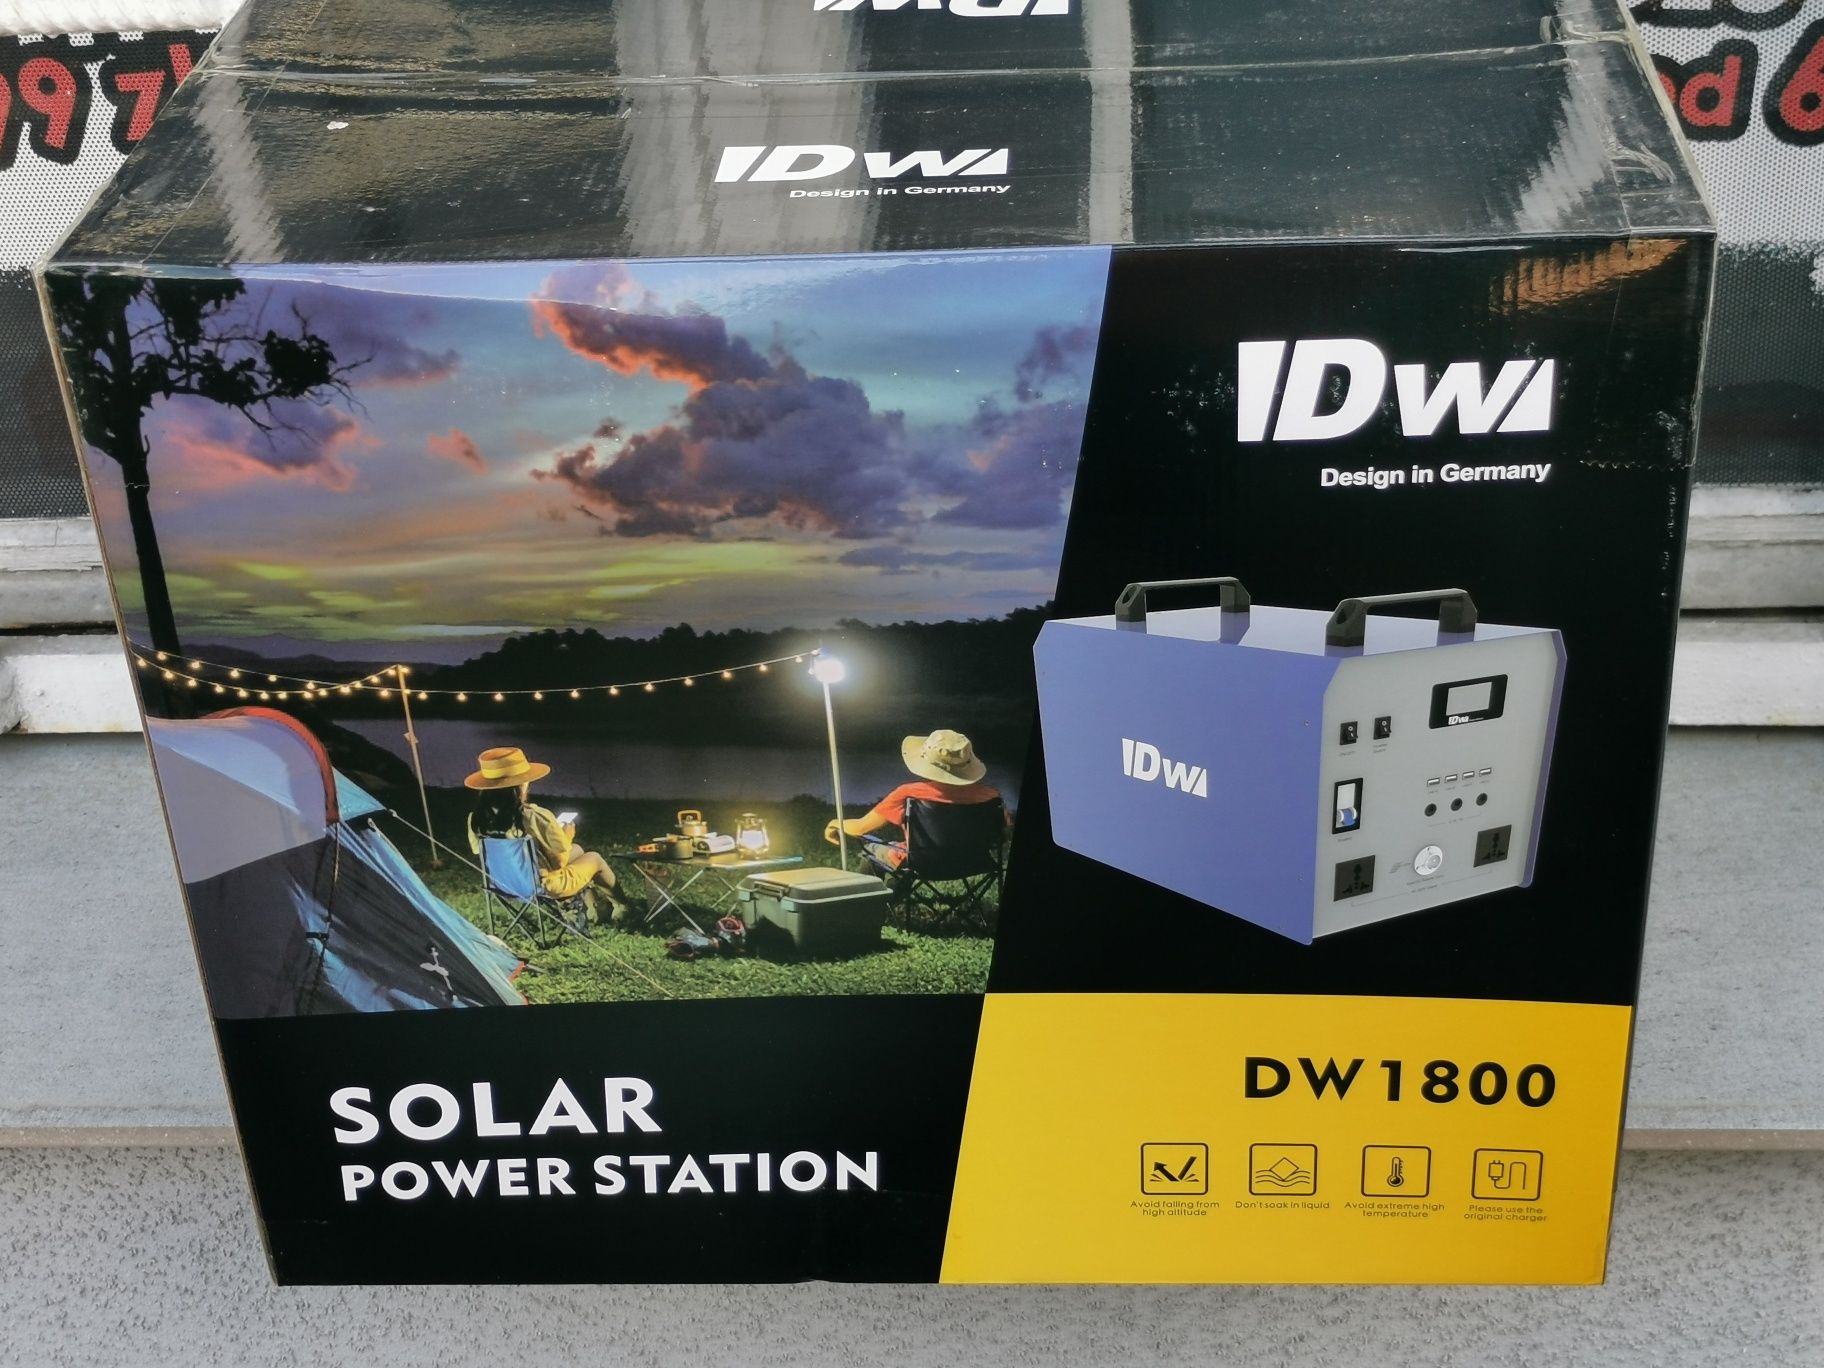 Stacja DW Power Station